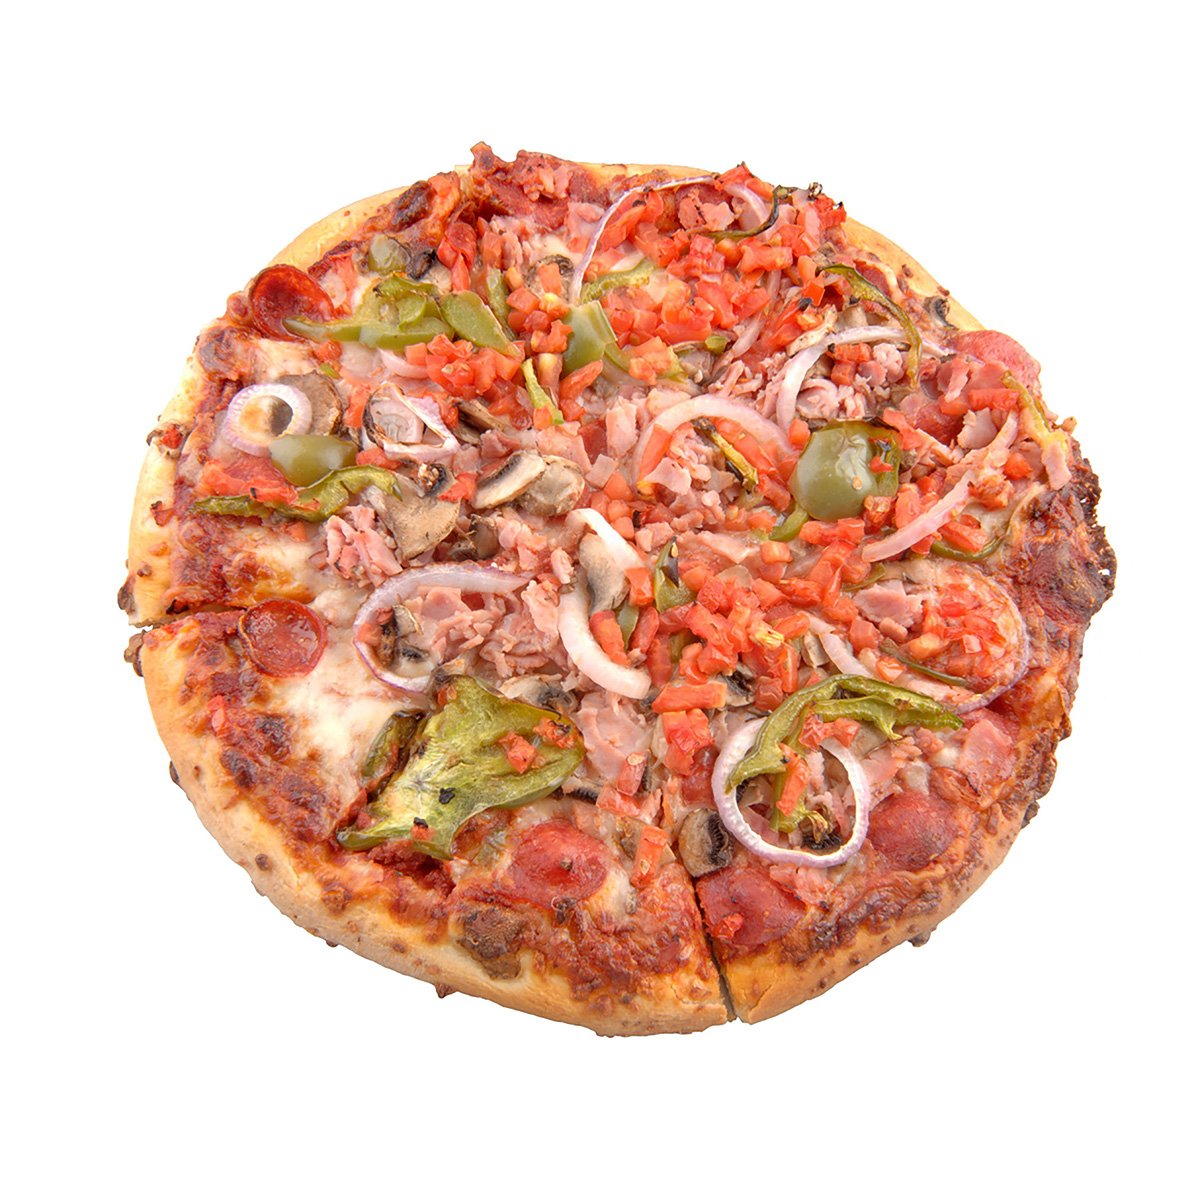 12 inch pizza